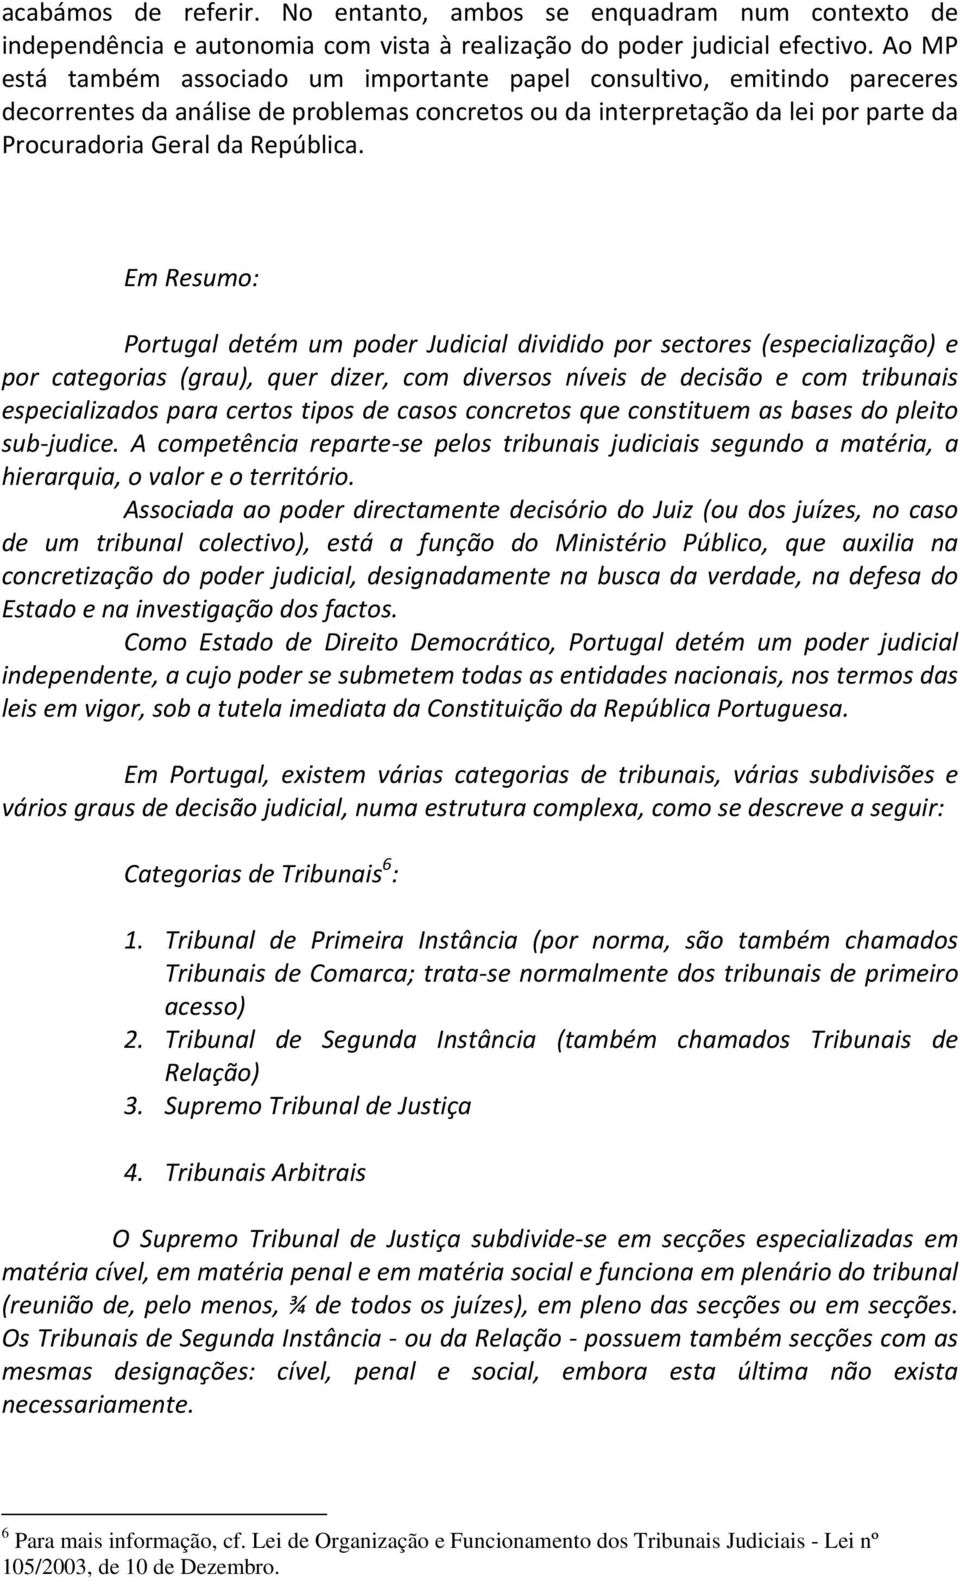 Em Resumo: Portugal detém um poder Judicial dividido por sectores (especialização) e por categorias (grau), quer dizer, com diversos níveis de decisão e com tribunais especializados para certos tipos